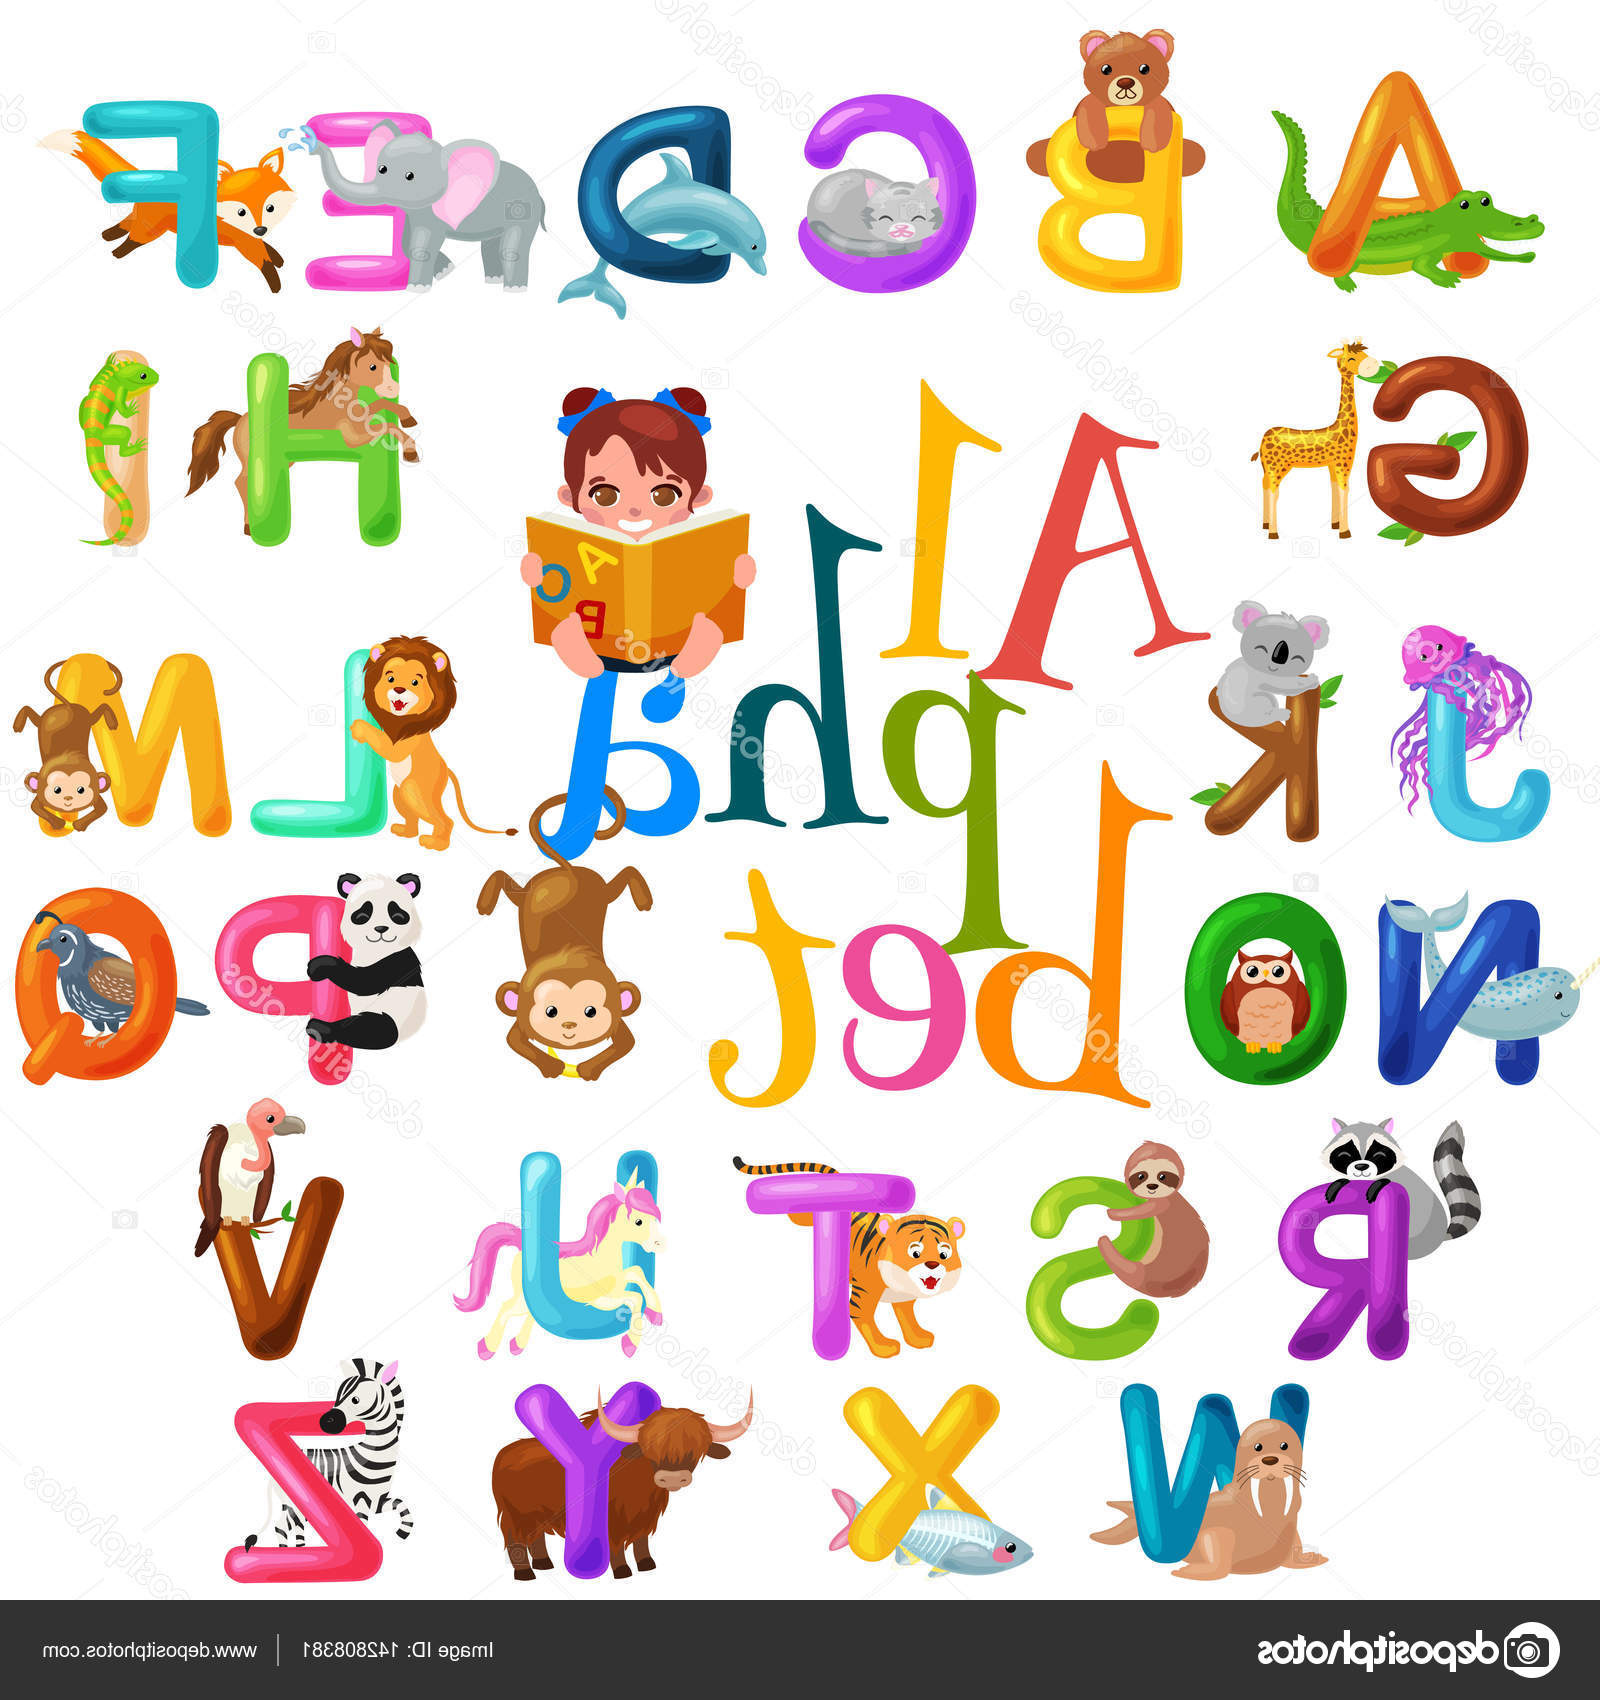 Dessin école Maternelle Élégant Galerie Alphabet Animaux Pour Enfants Abc L’enseignement En école